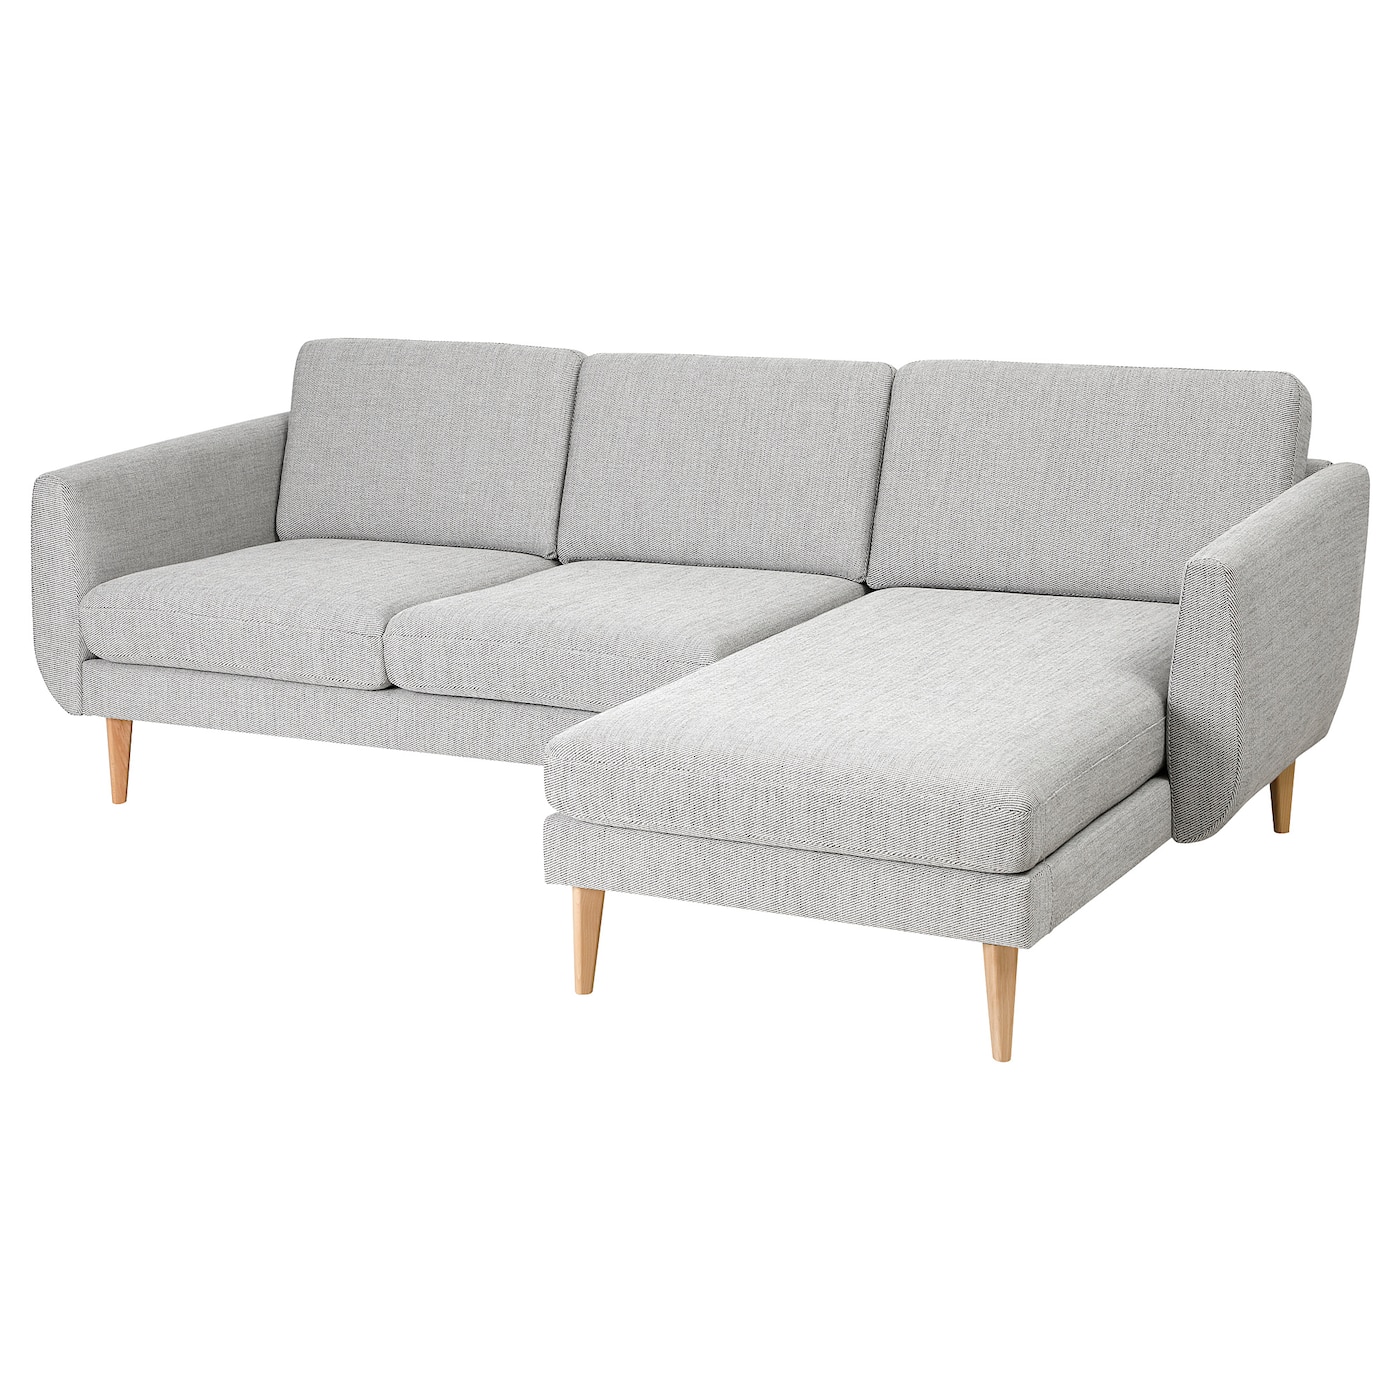 СМЕДСТОРП 3-местный диван + диван, Виарп/беж/коричневый дуб SMEDSTORP IKEA